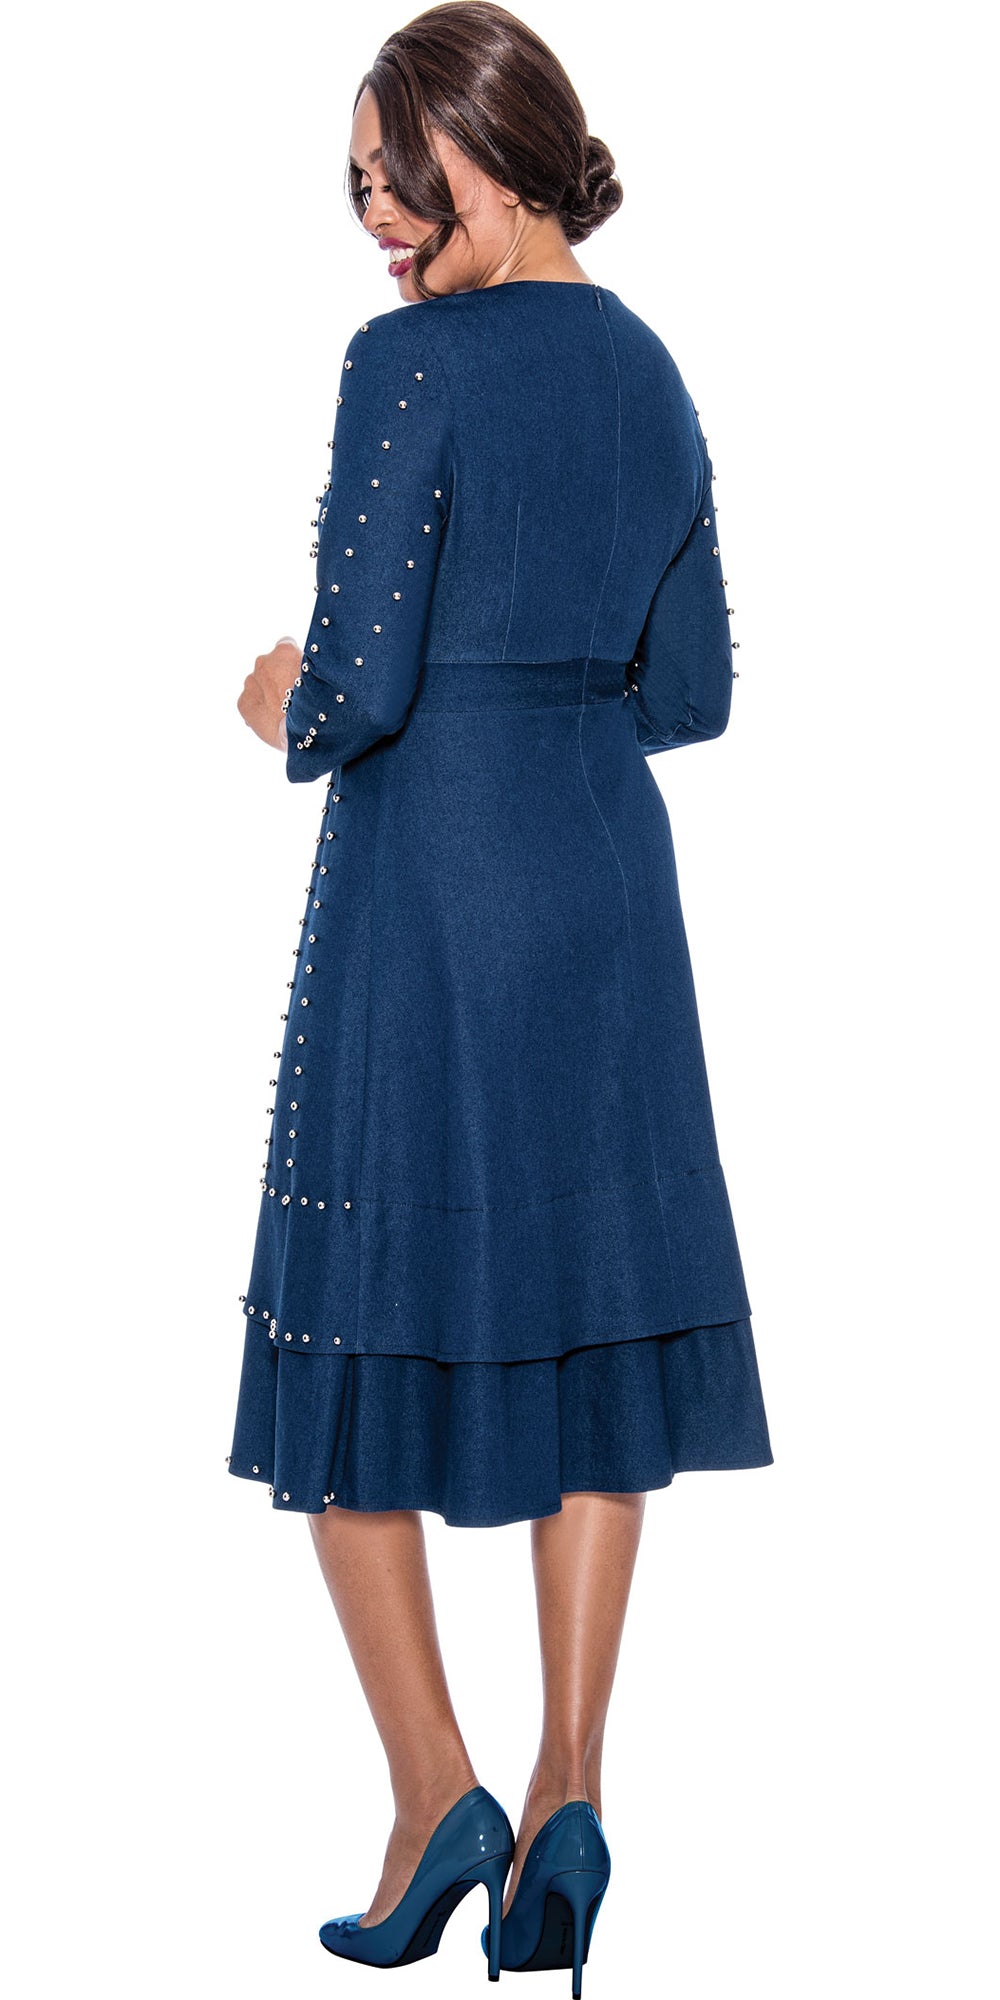 Devine Sport 64021 - Blue - Embellished Soft Stretch Denim Dress